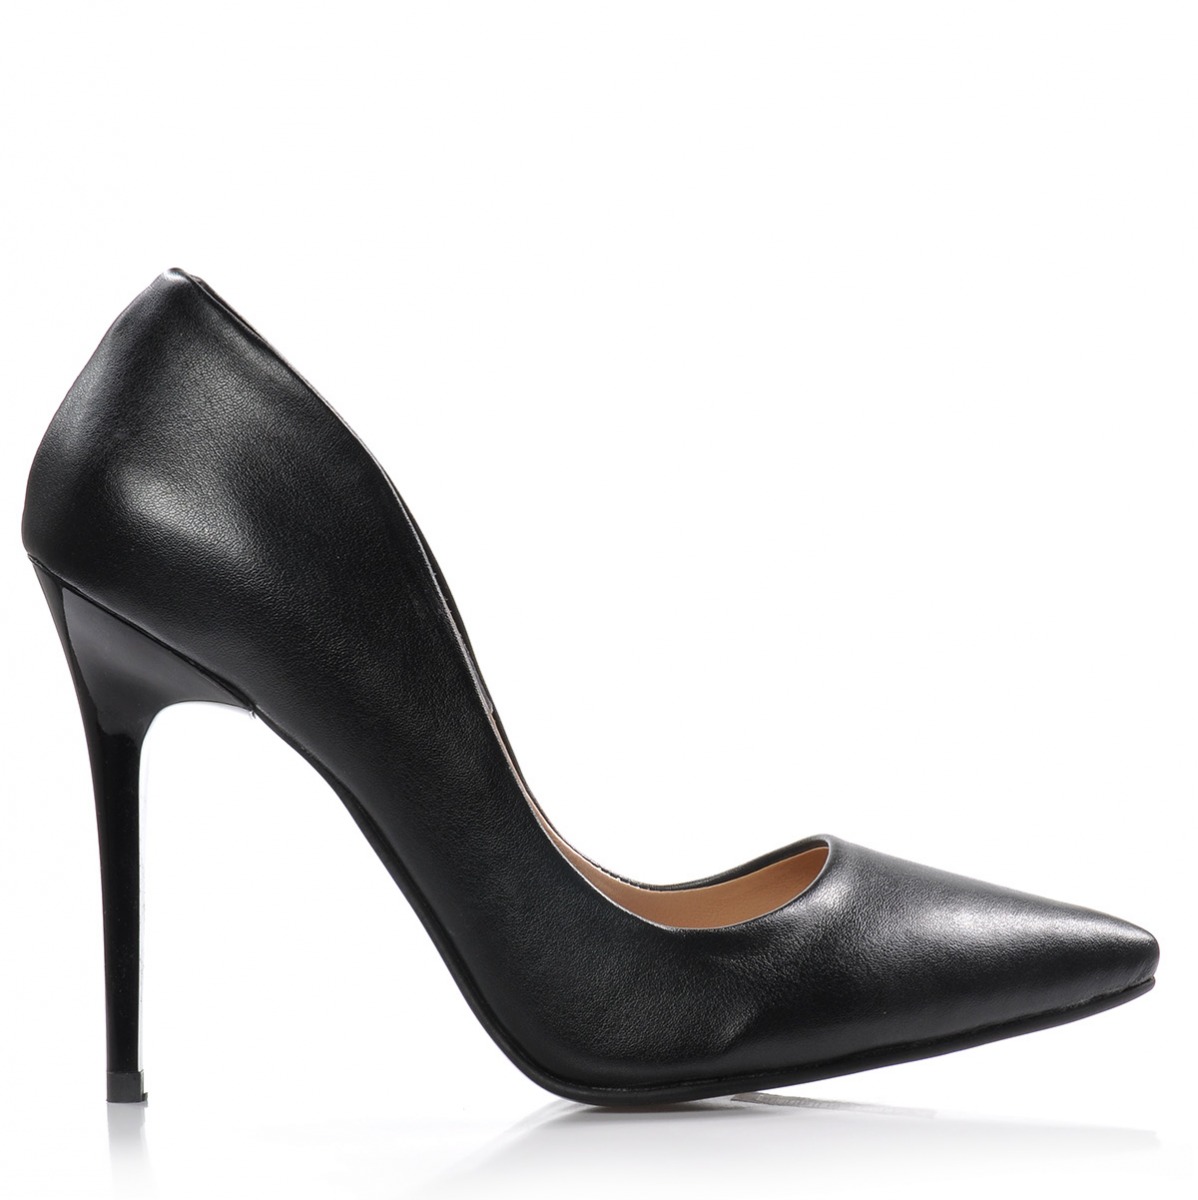 Flo Kadın  Siyah Klasik Topuklu Ayakkabı VZN-332Y. 1